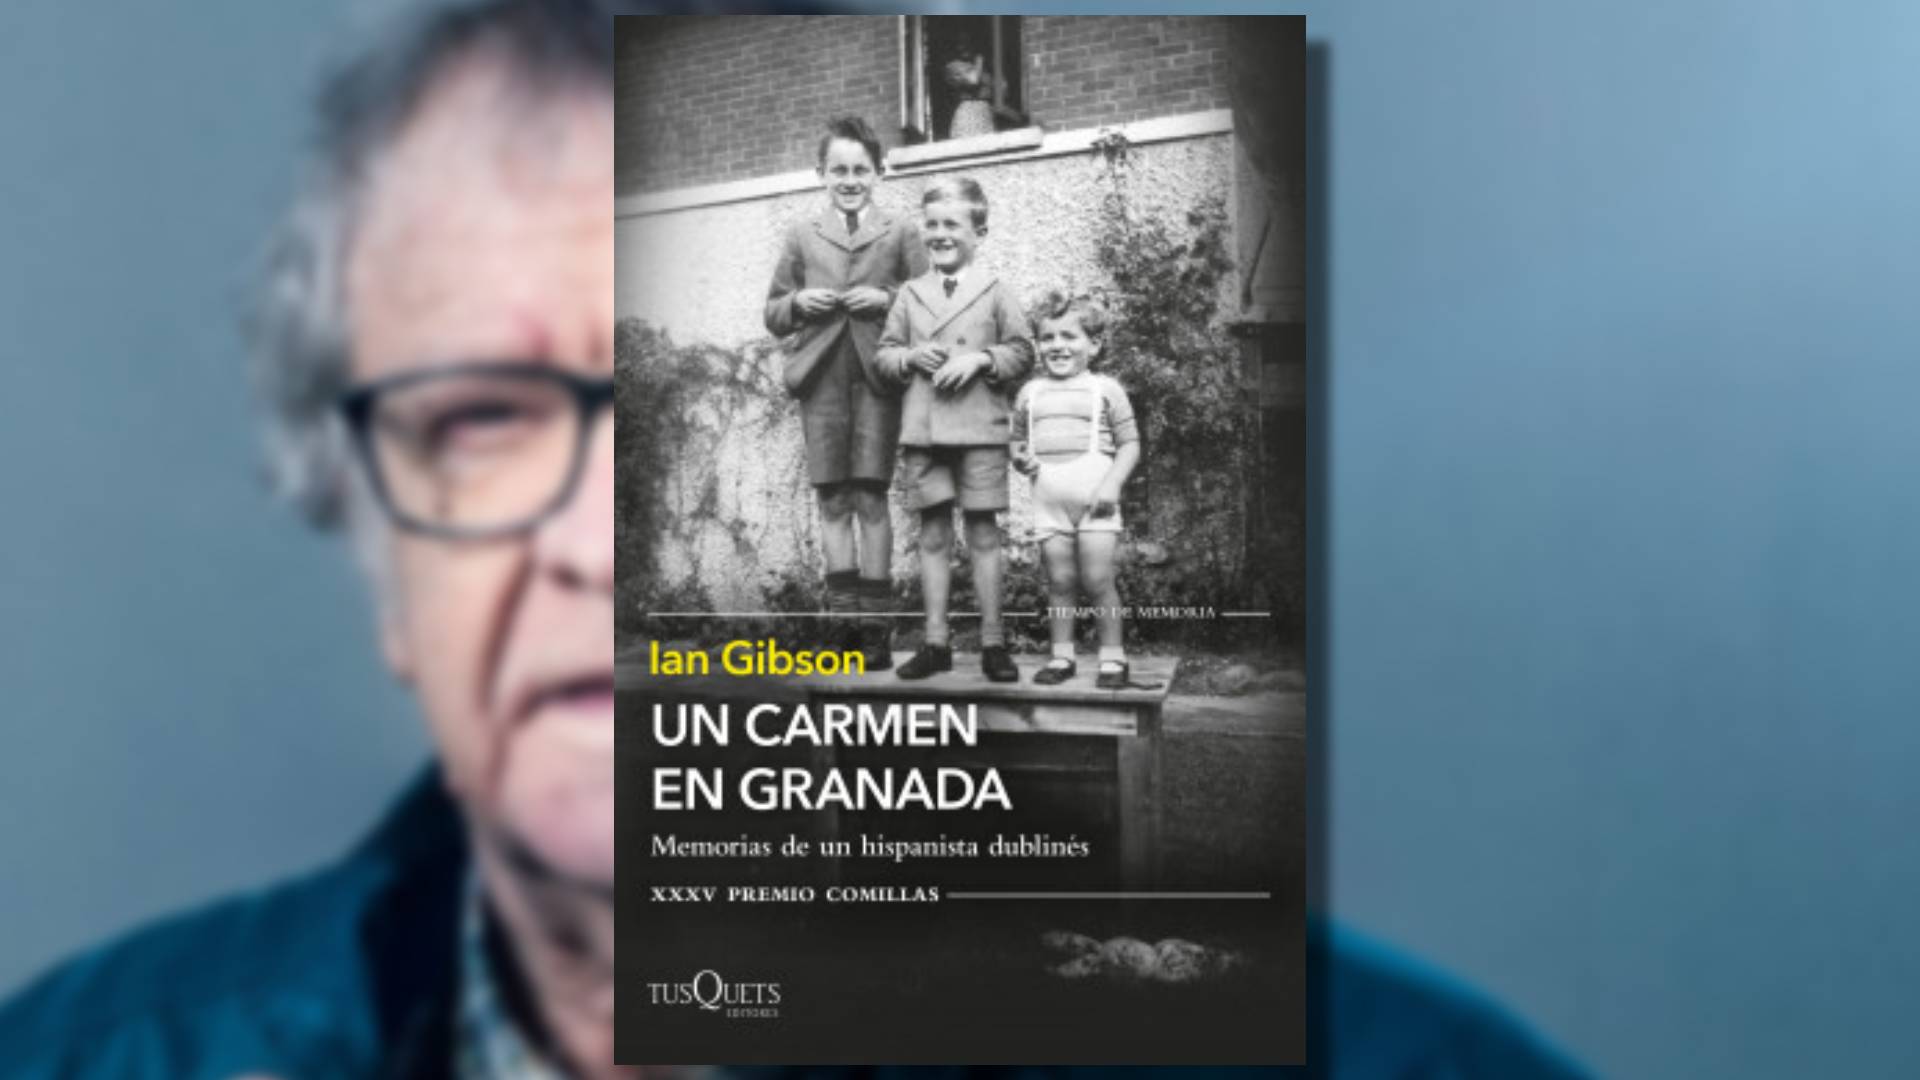 "Un Carmen en Granada" fue publicado por Tusquets, y fue una obra ganadora de XXV Premio Comillas de Memorias.